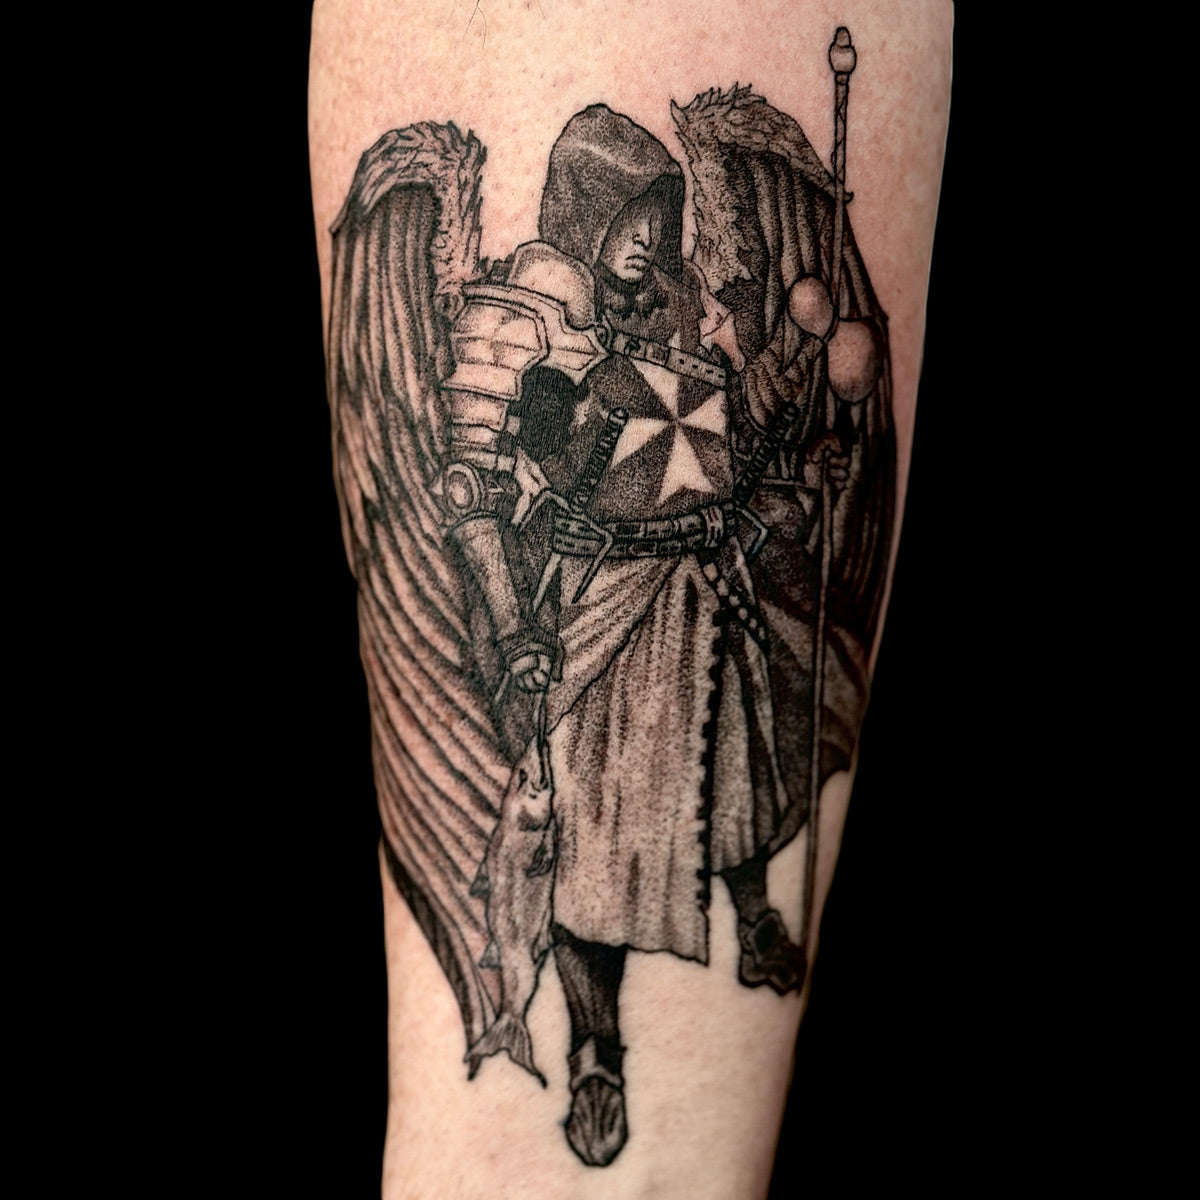 archangel knights templar tattoo by Danny Schreiber